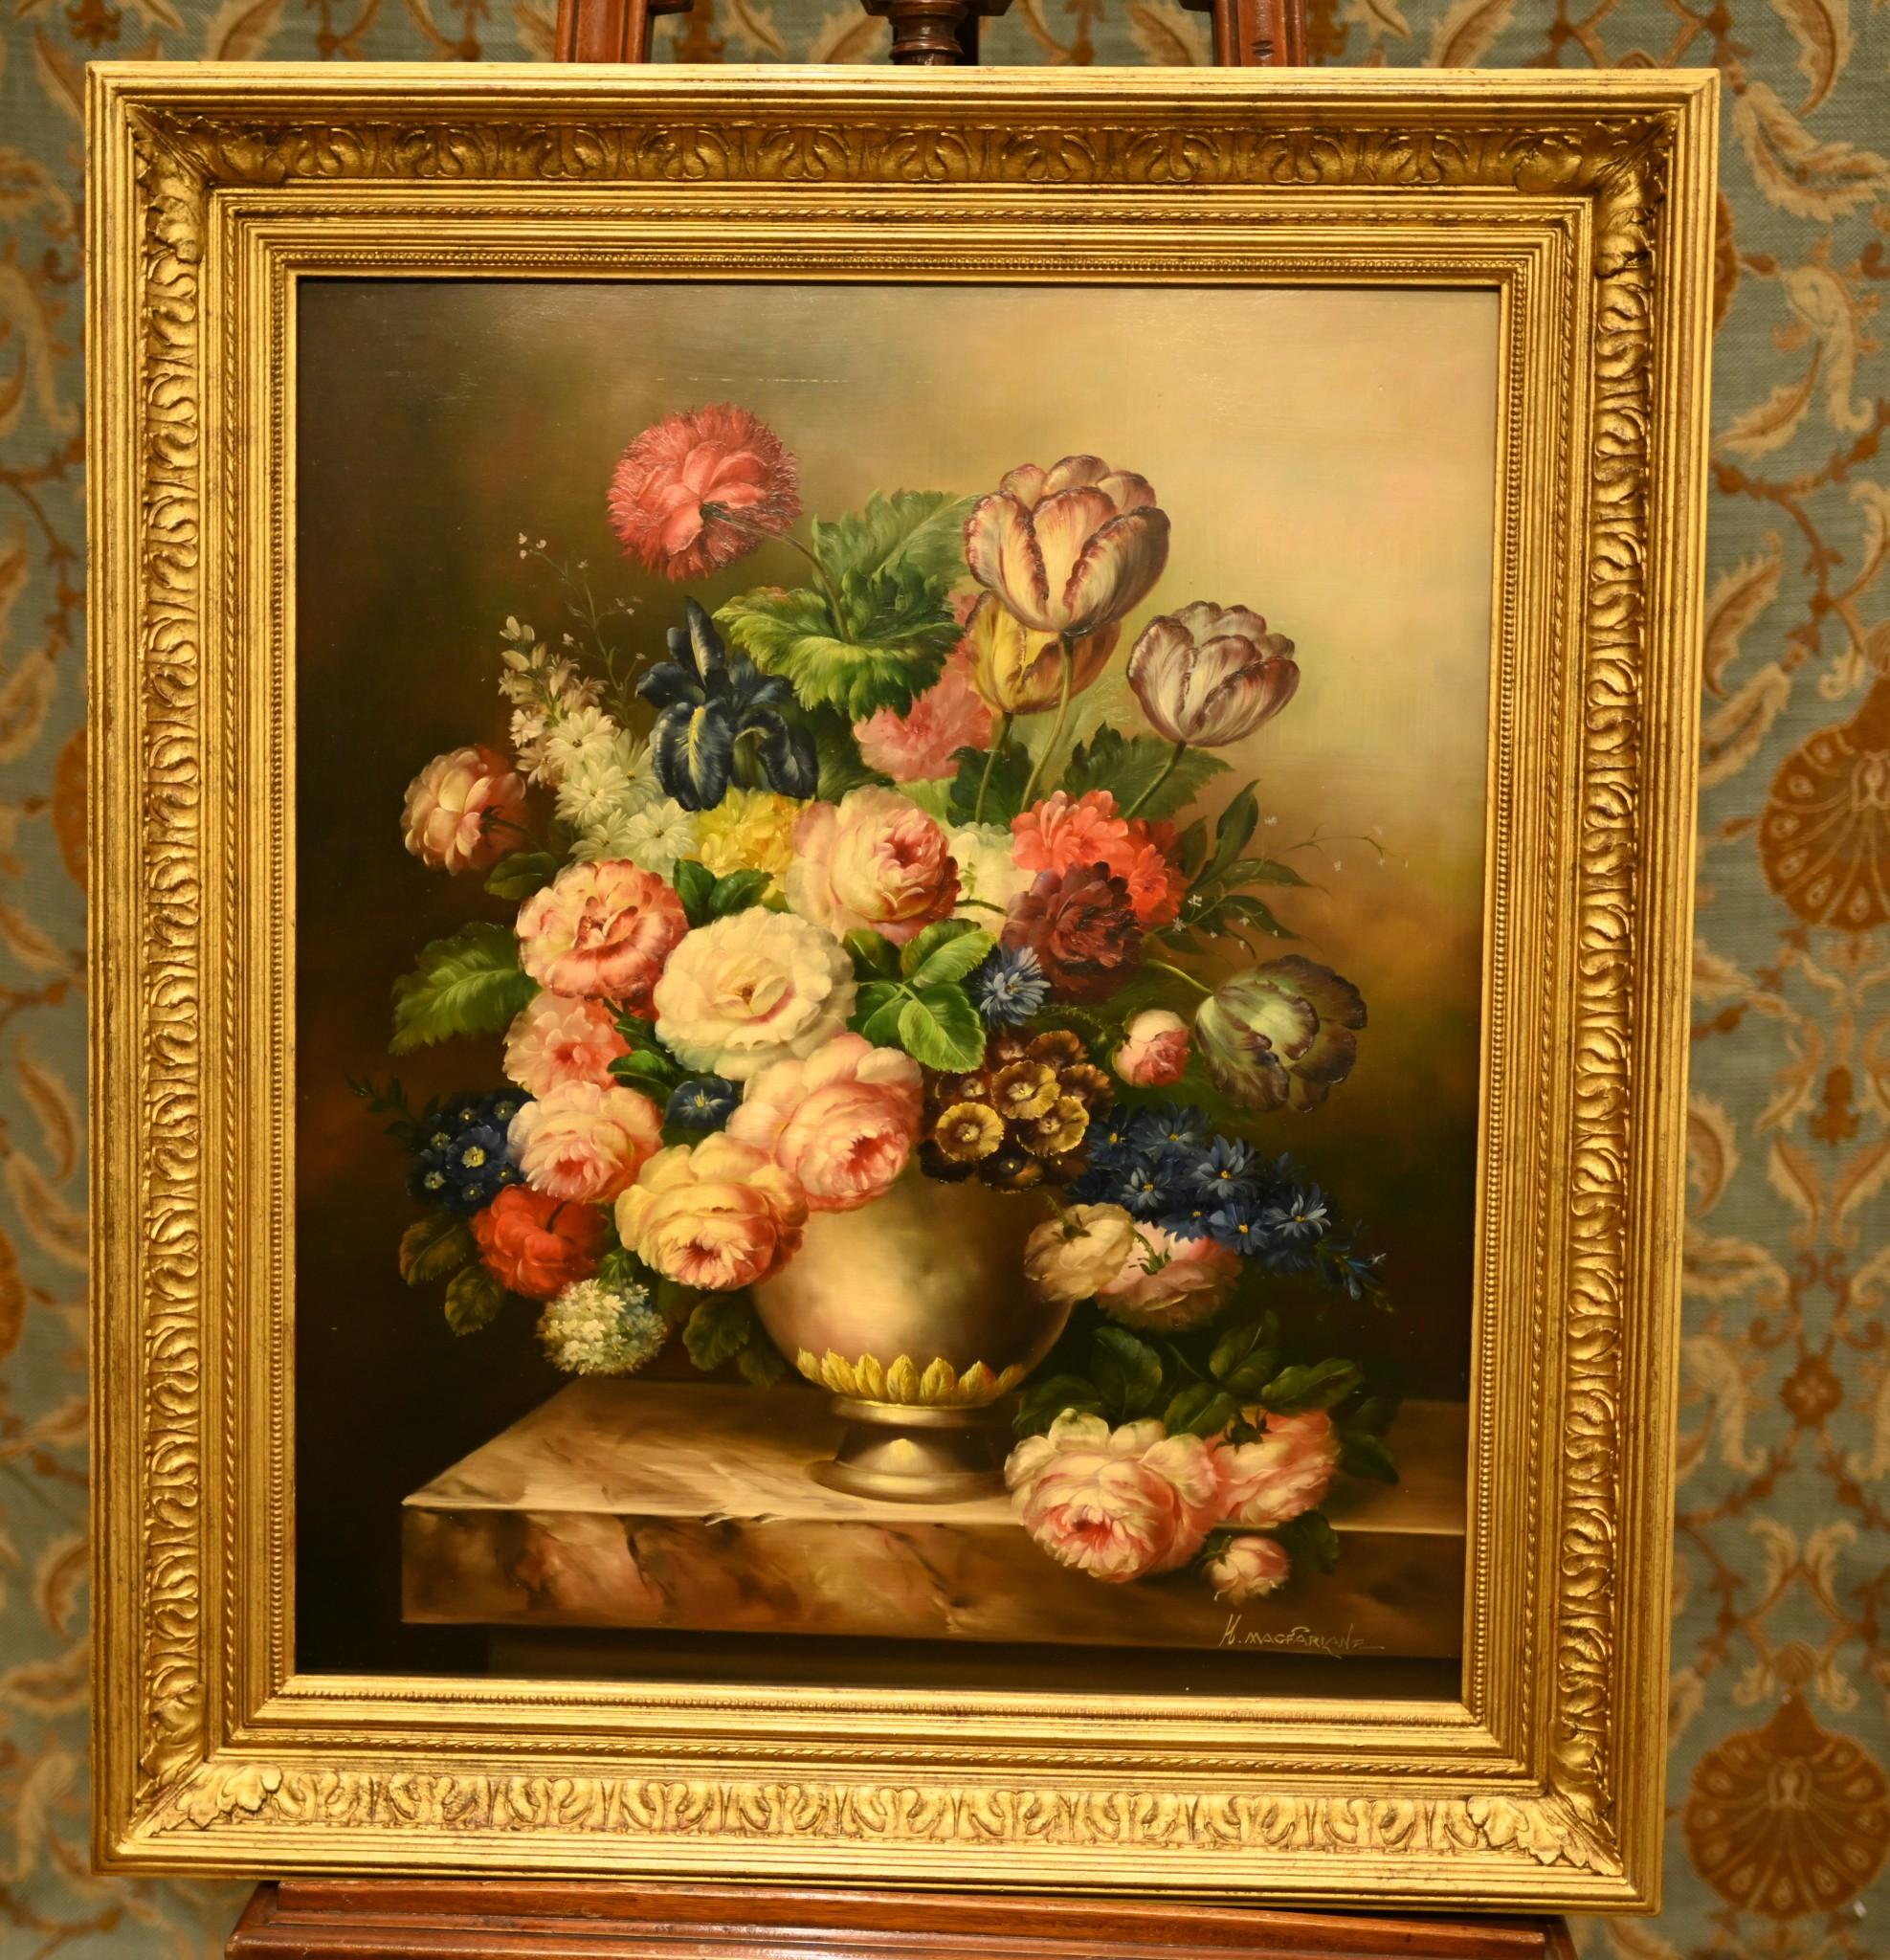 Merveilleuse peinture à l'huile anglaise d'une présentation de fleurs dans un vase.
Une œuvre lumineuse et pleine d'énergie, il suffit de regarder les couleurs.
Signé H Magfarlane dans le coin inférieur droit, voir photo en gros plan
Artistics très